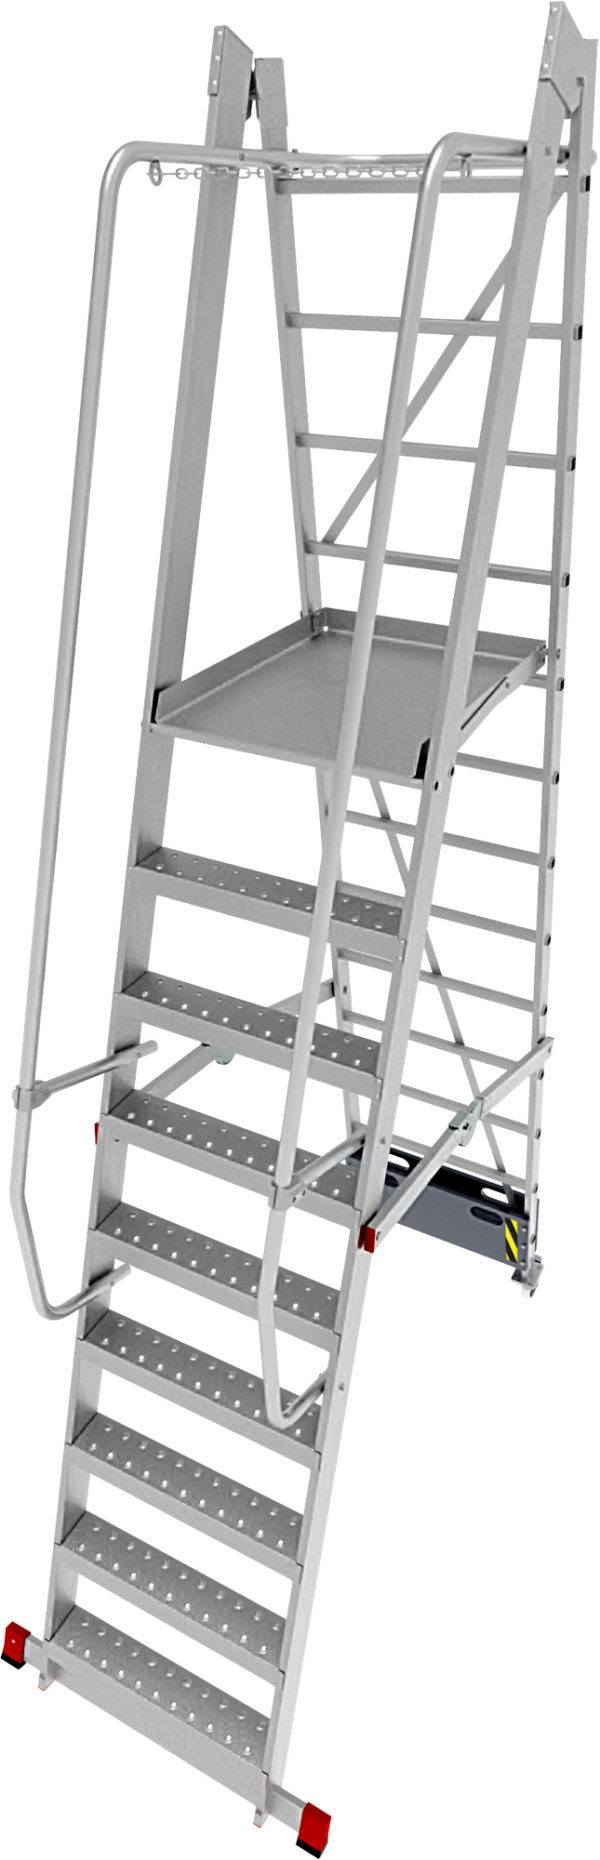 Профессиональная передвижная складная лестница-стремянка с платформой NV3540 артикул 3540109